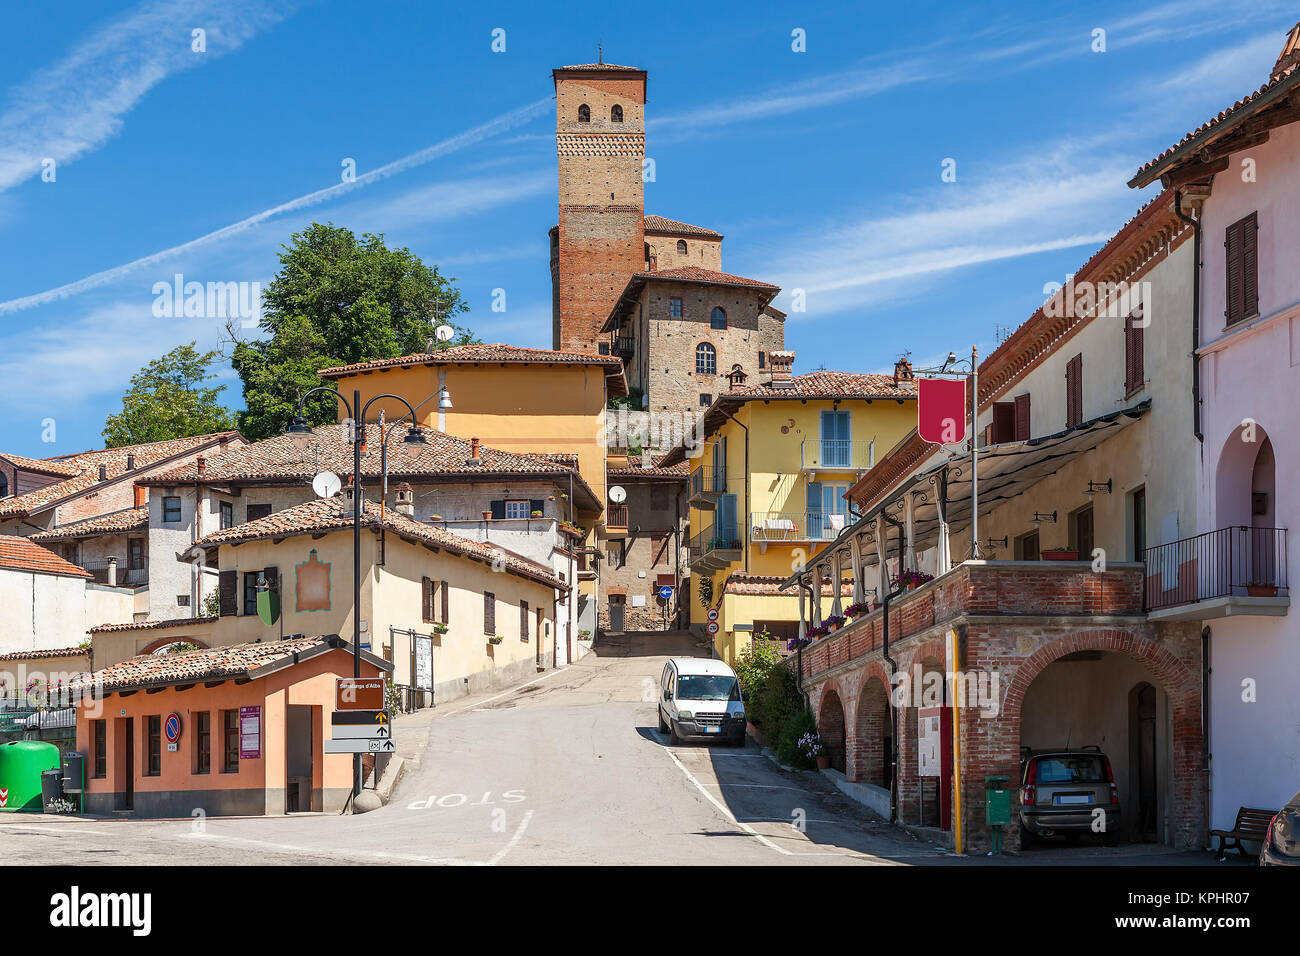 Stadt von Serralunga d'Alba, Italien Stockfotografie - Alamy